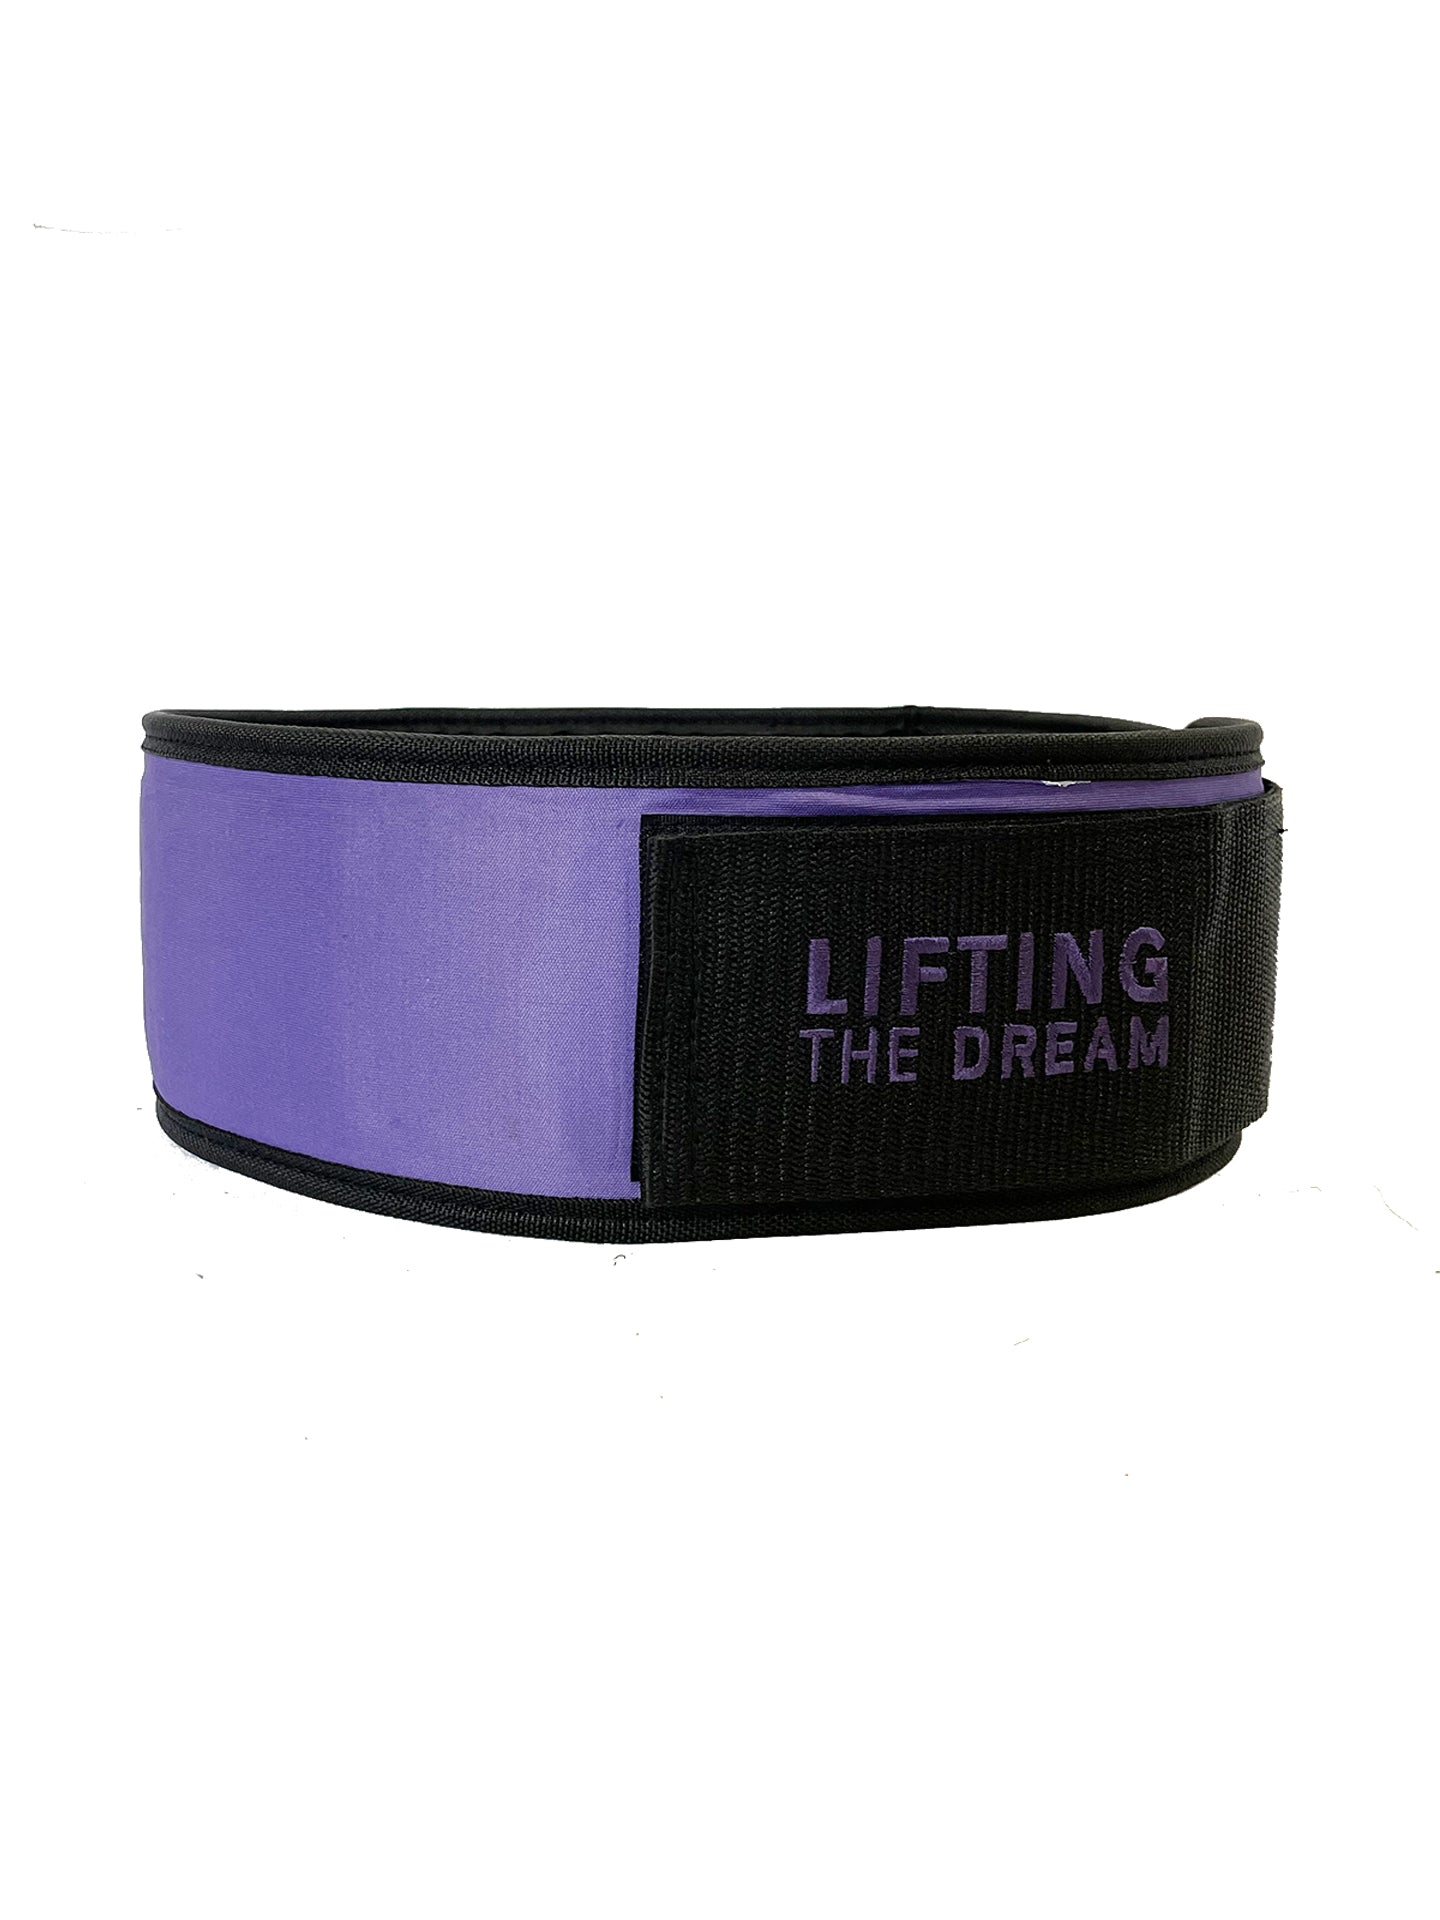 Gorilla Wear 4 Inch Women's Lifting Belt - Black/Purple